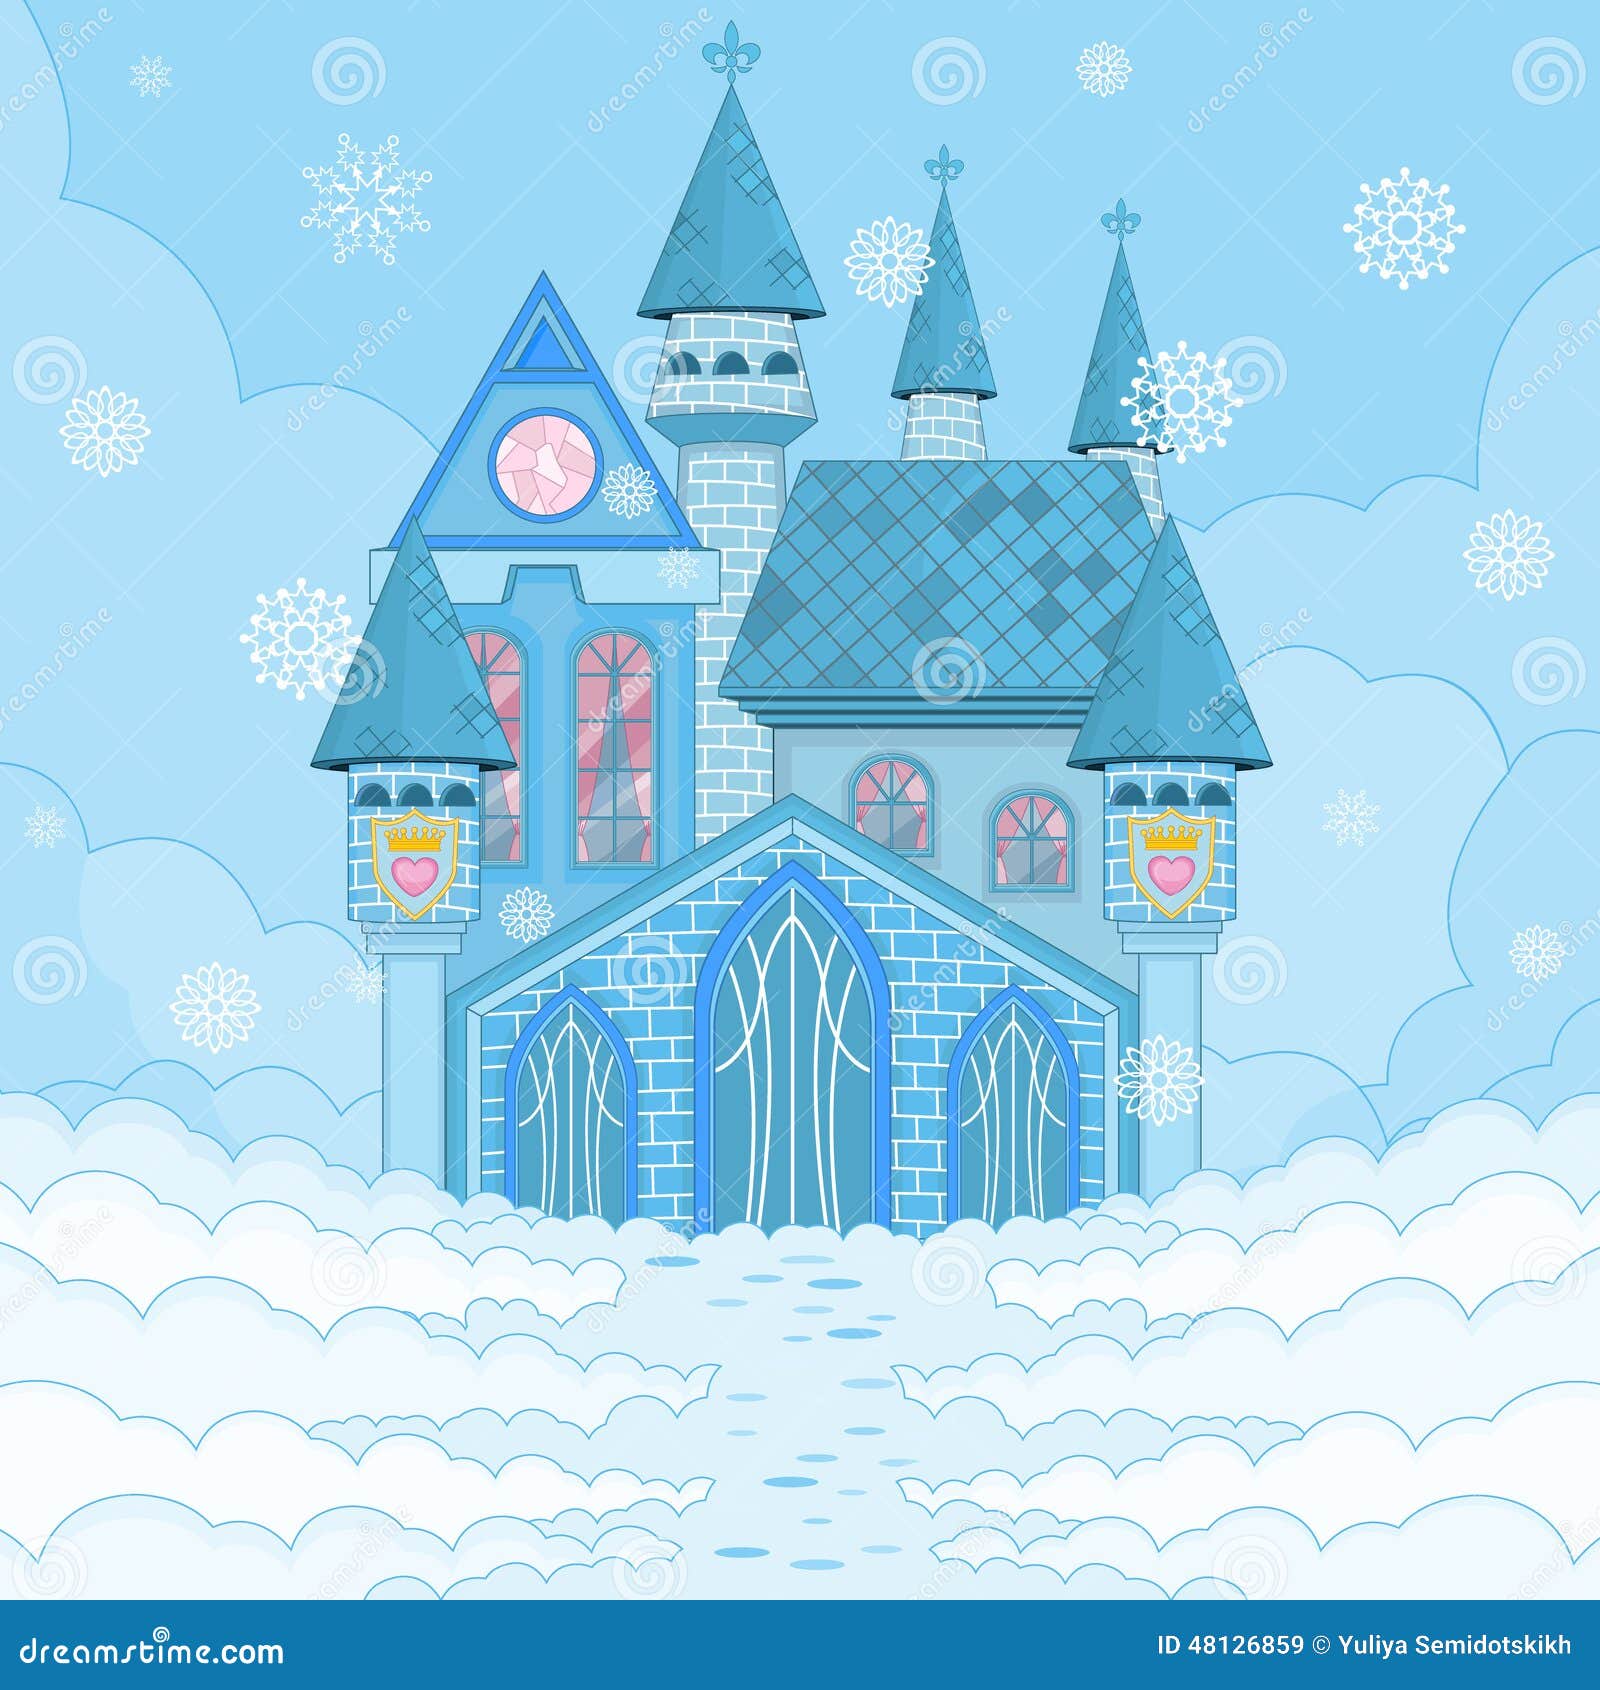 Сказочный дворец Деда Мороза и Снегурочки